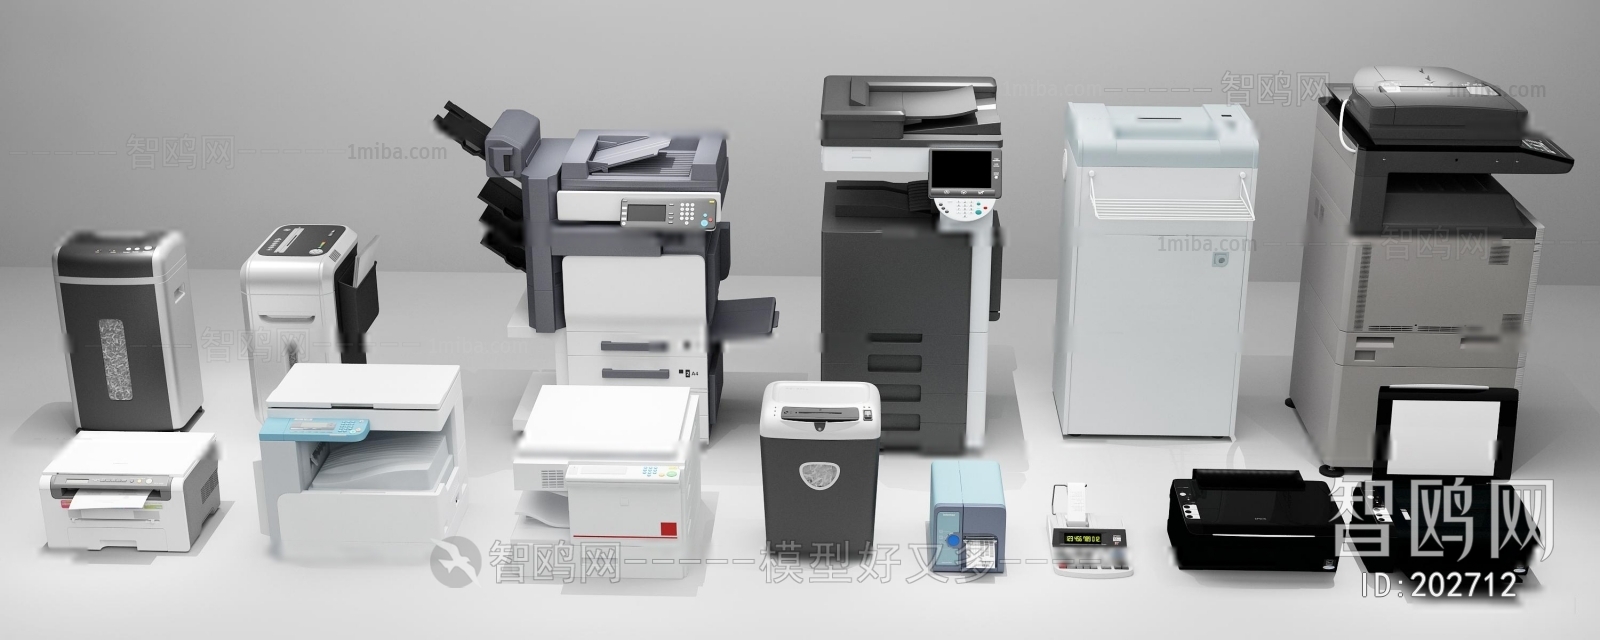 现代复印机打印机组合